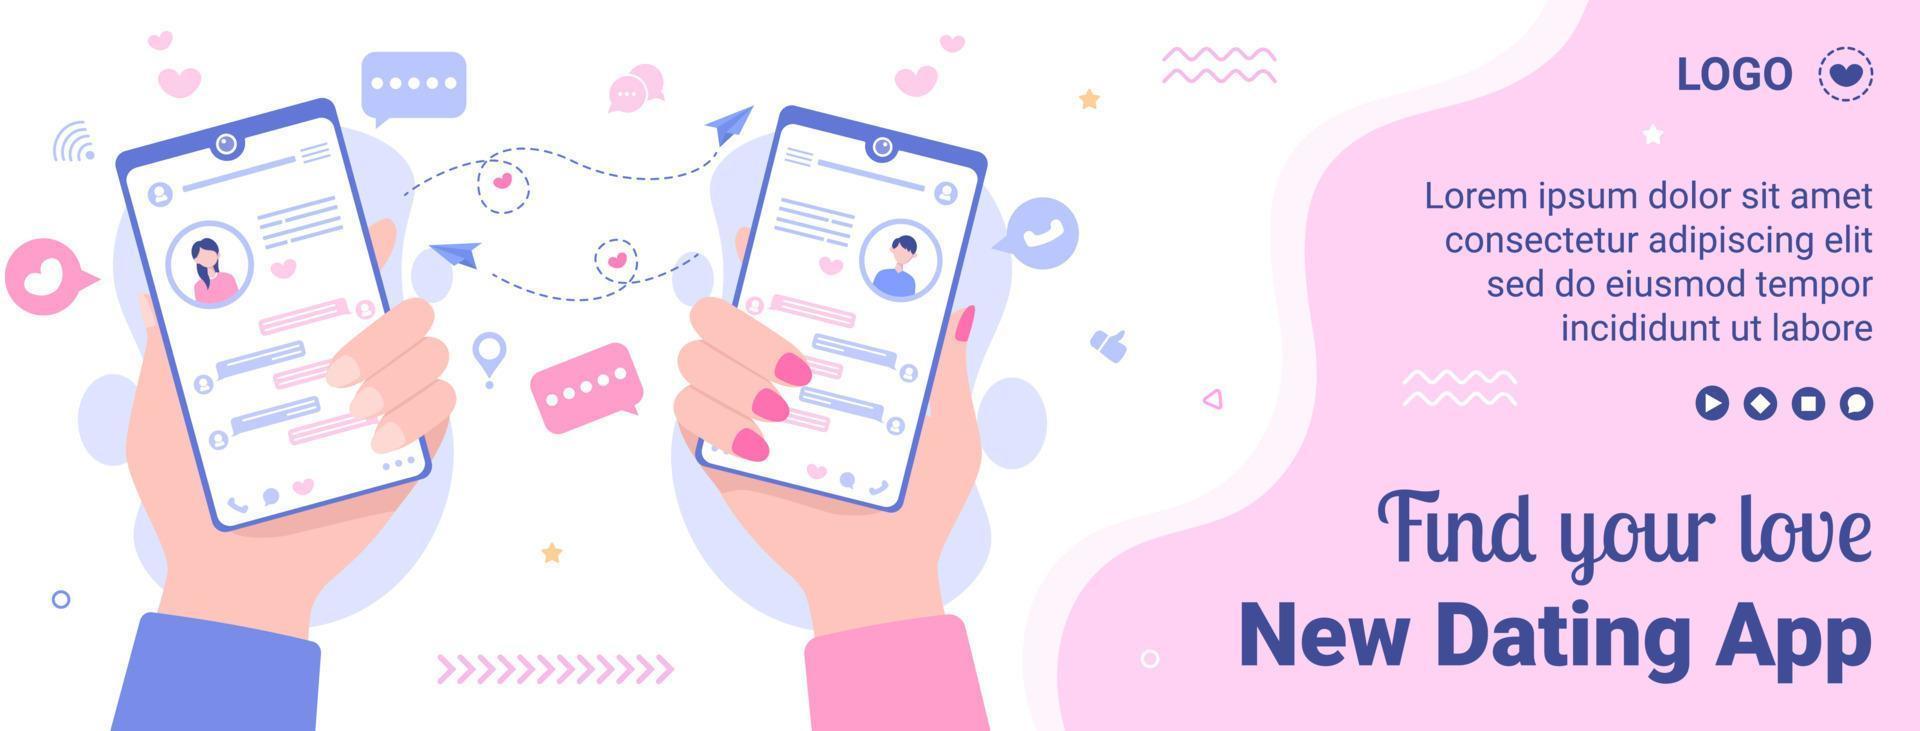 dating-app voor een liefdesmatch voorbladsjabloon plat ontwerp illustratie bewerkbaar van vierkante achtergrond geschikt voor sociale media of valentijnskaart vector